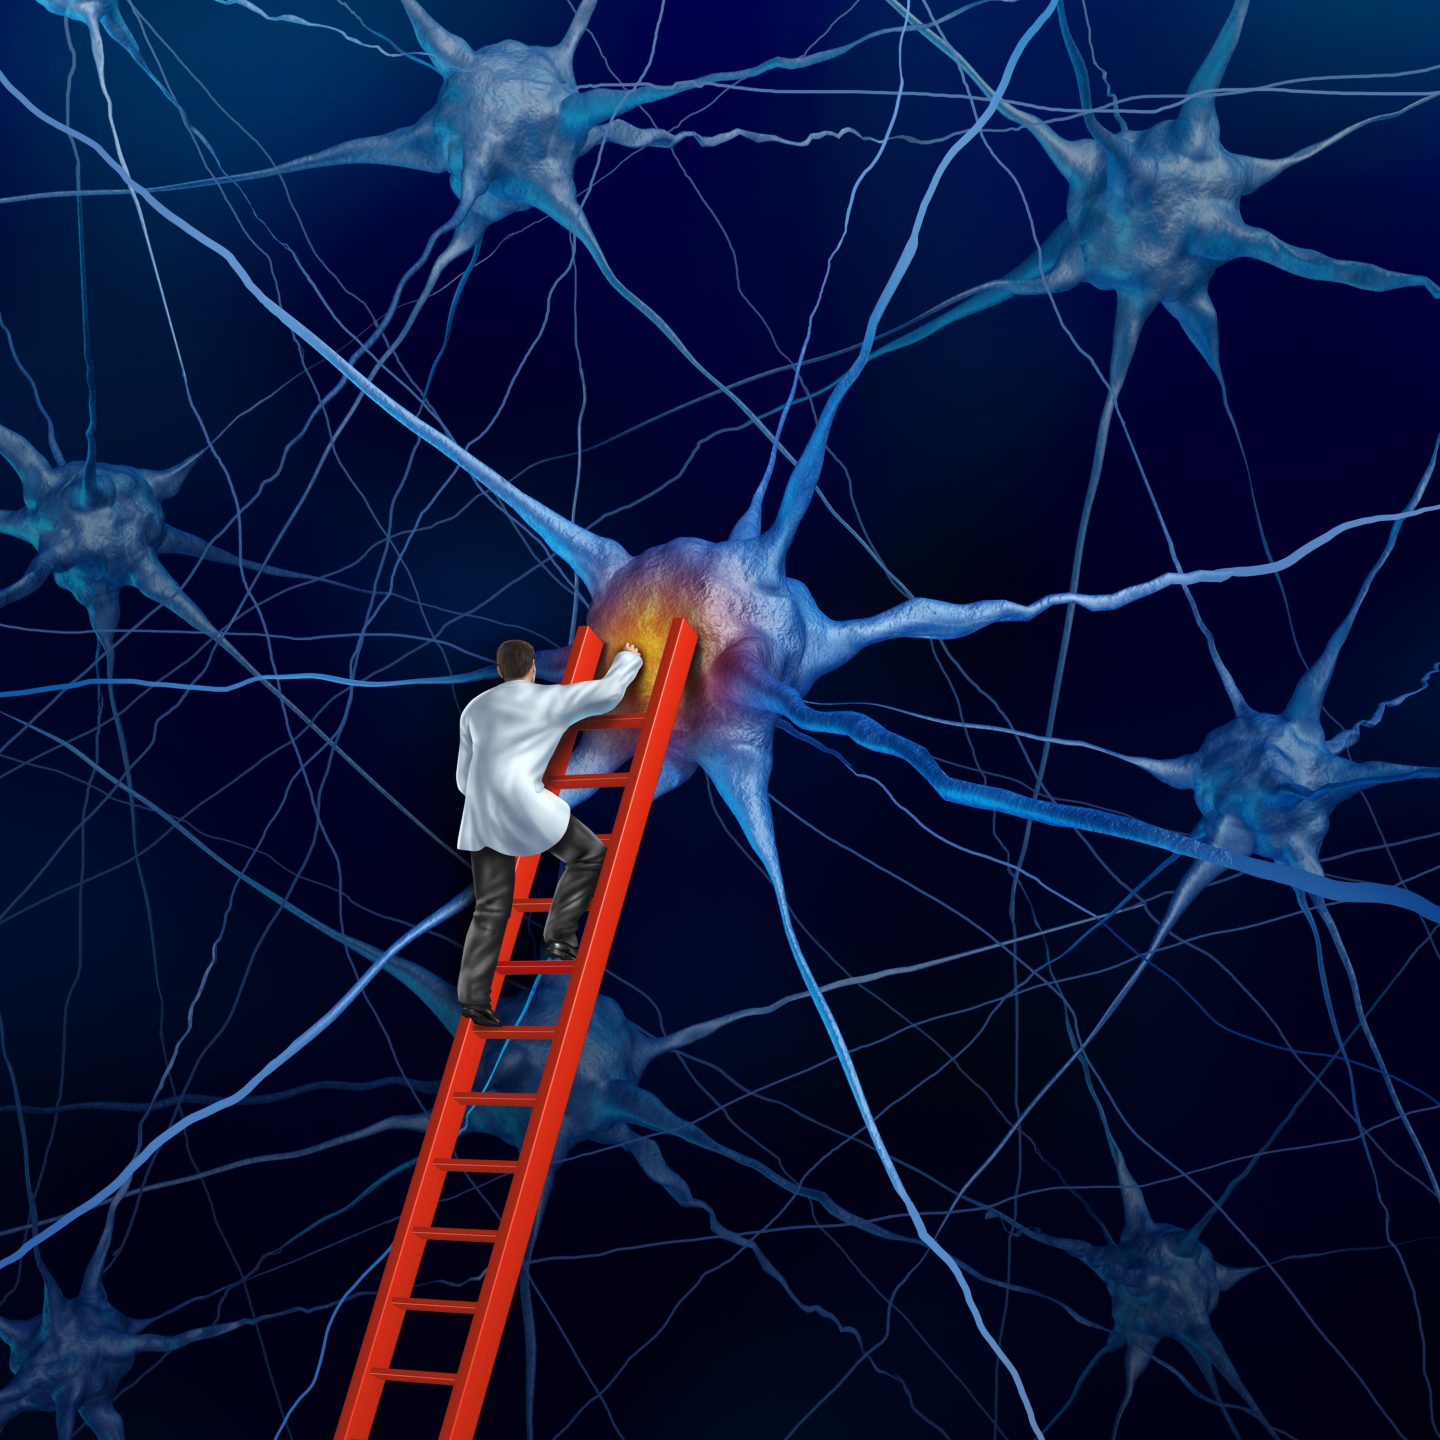 اكتشاف نوع جديد من الخلايا العصبية يلقي الضوء على تشكل الذكريات